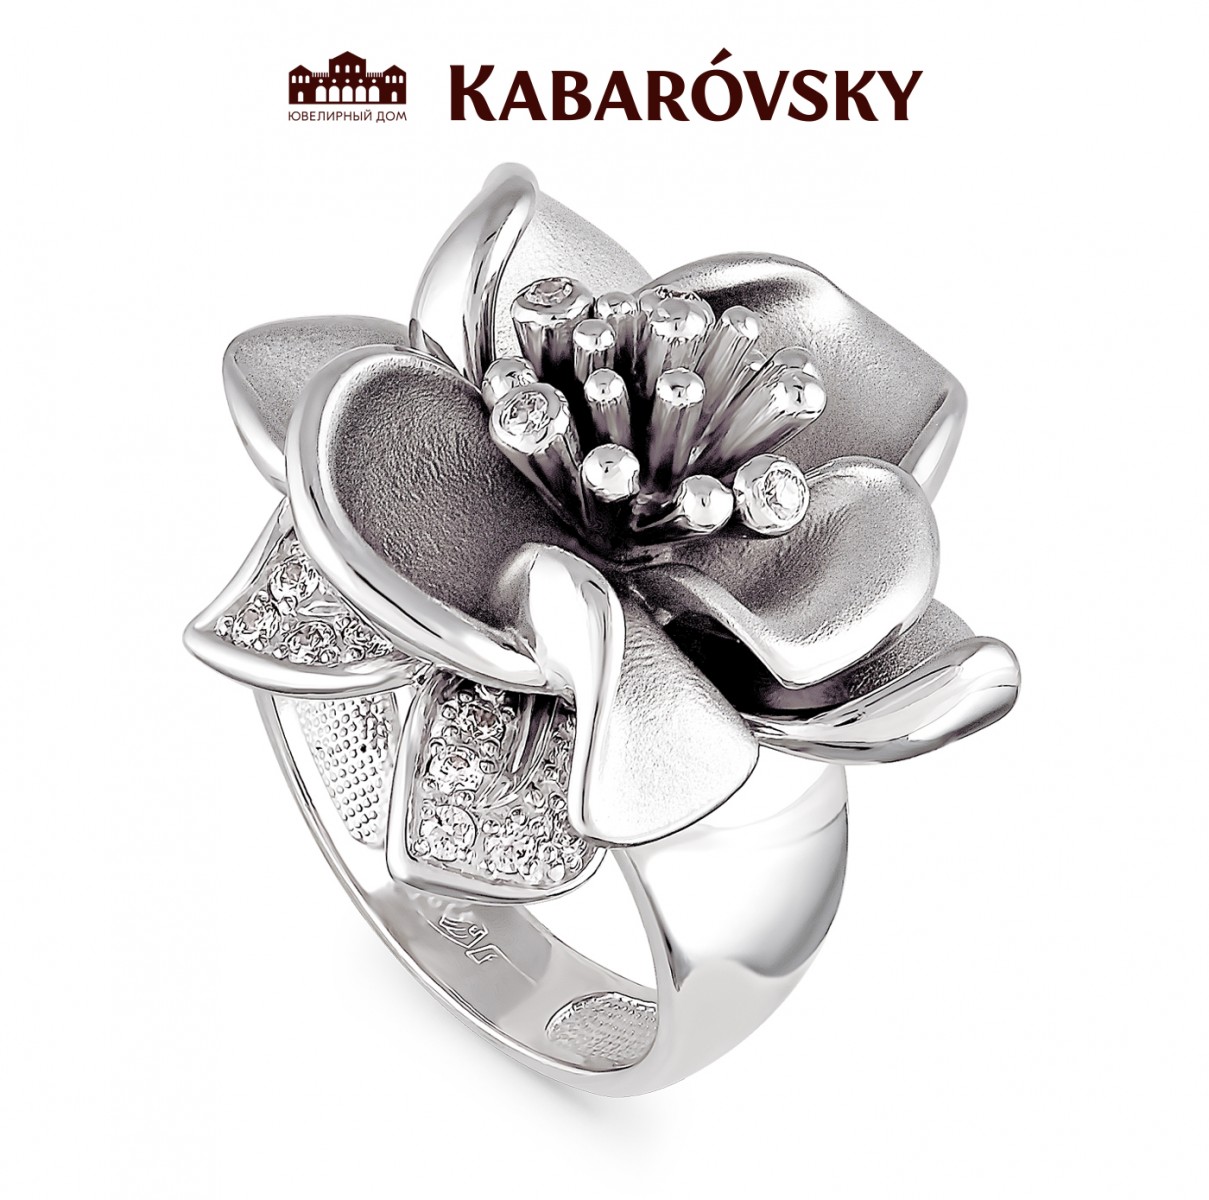 Ювелирные украшения серебряные линии. Кольцо с магнолией Кабаровски. Кольцо цветок бижутерия. Кольцо в виде цветка. Крупные кольца из серебра.